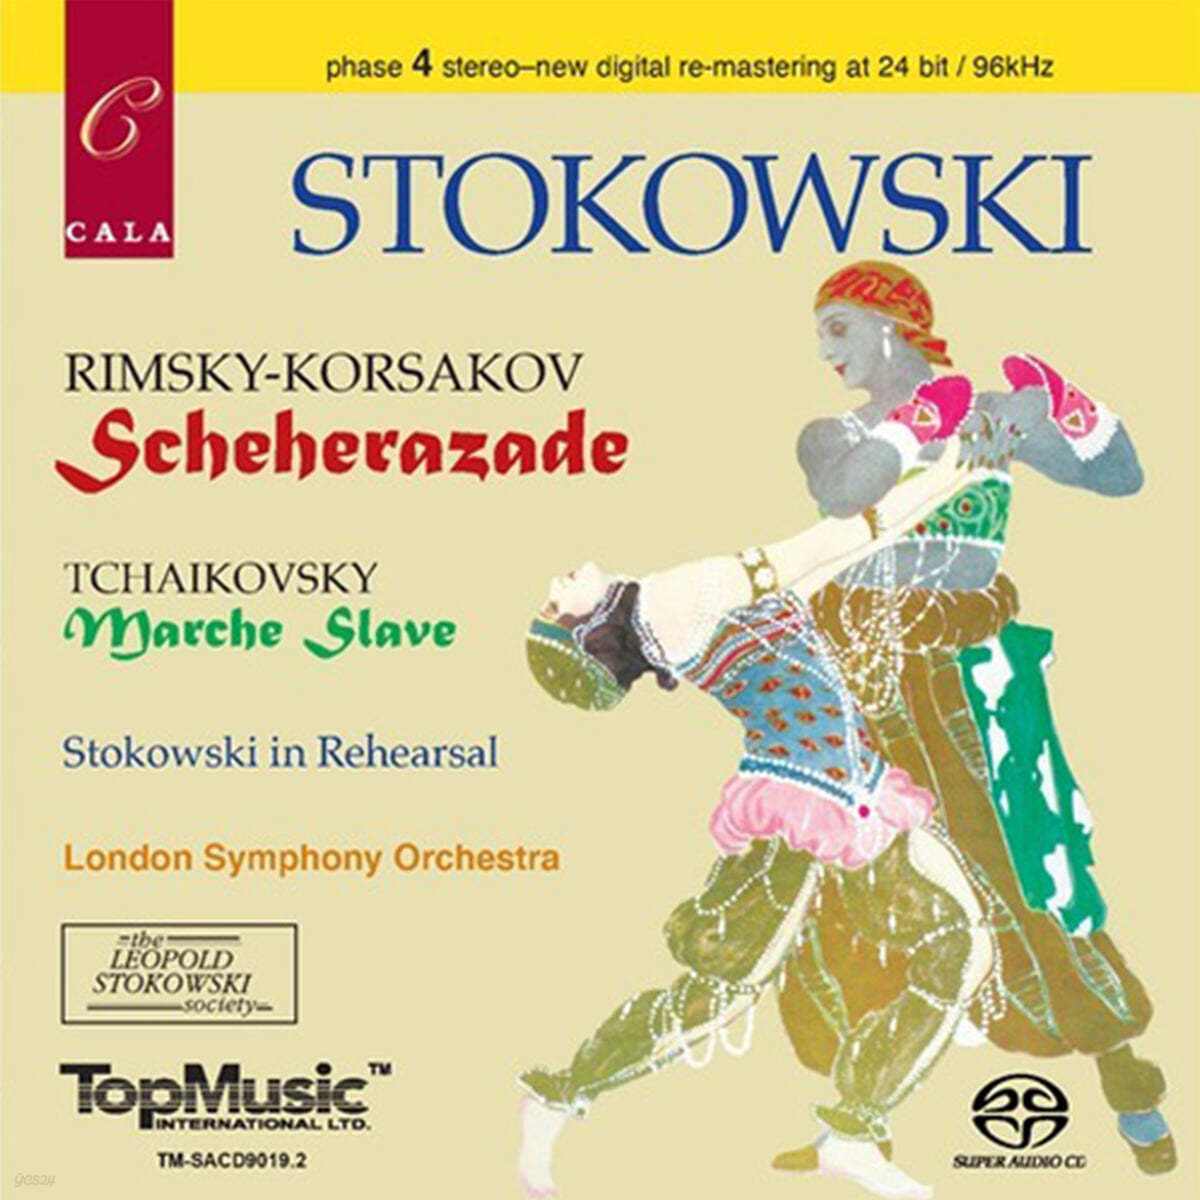 Leopold Stokowski 림스키-코르샤코프: 세헤라자데 / 차이코프스키: 슬라브 행진곡 (Rimsky-Korsakov: Scheherazade / Tachikovsky: Marche Slave) 